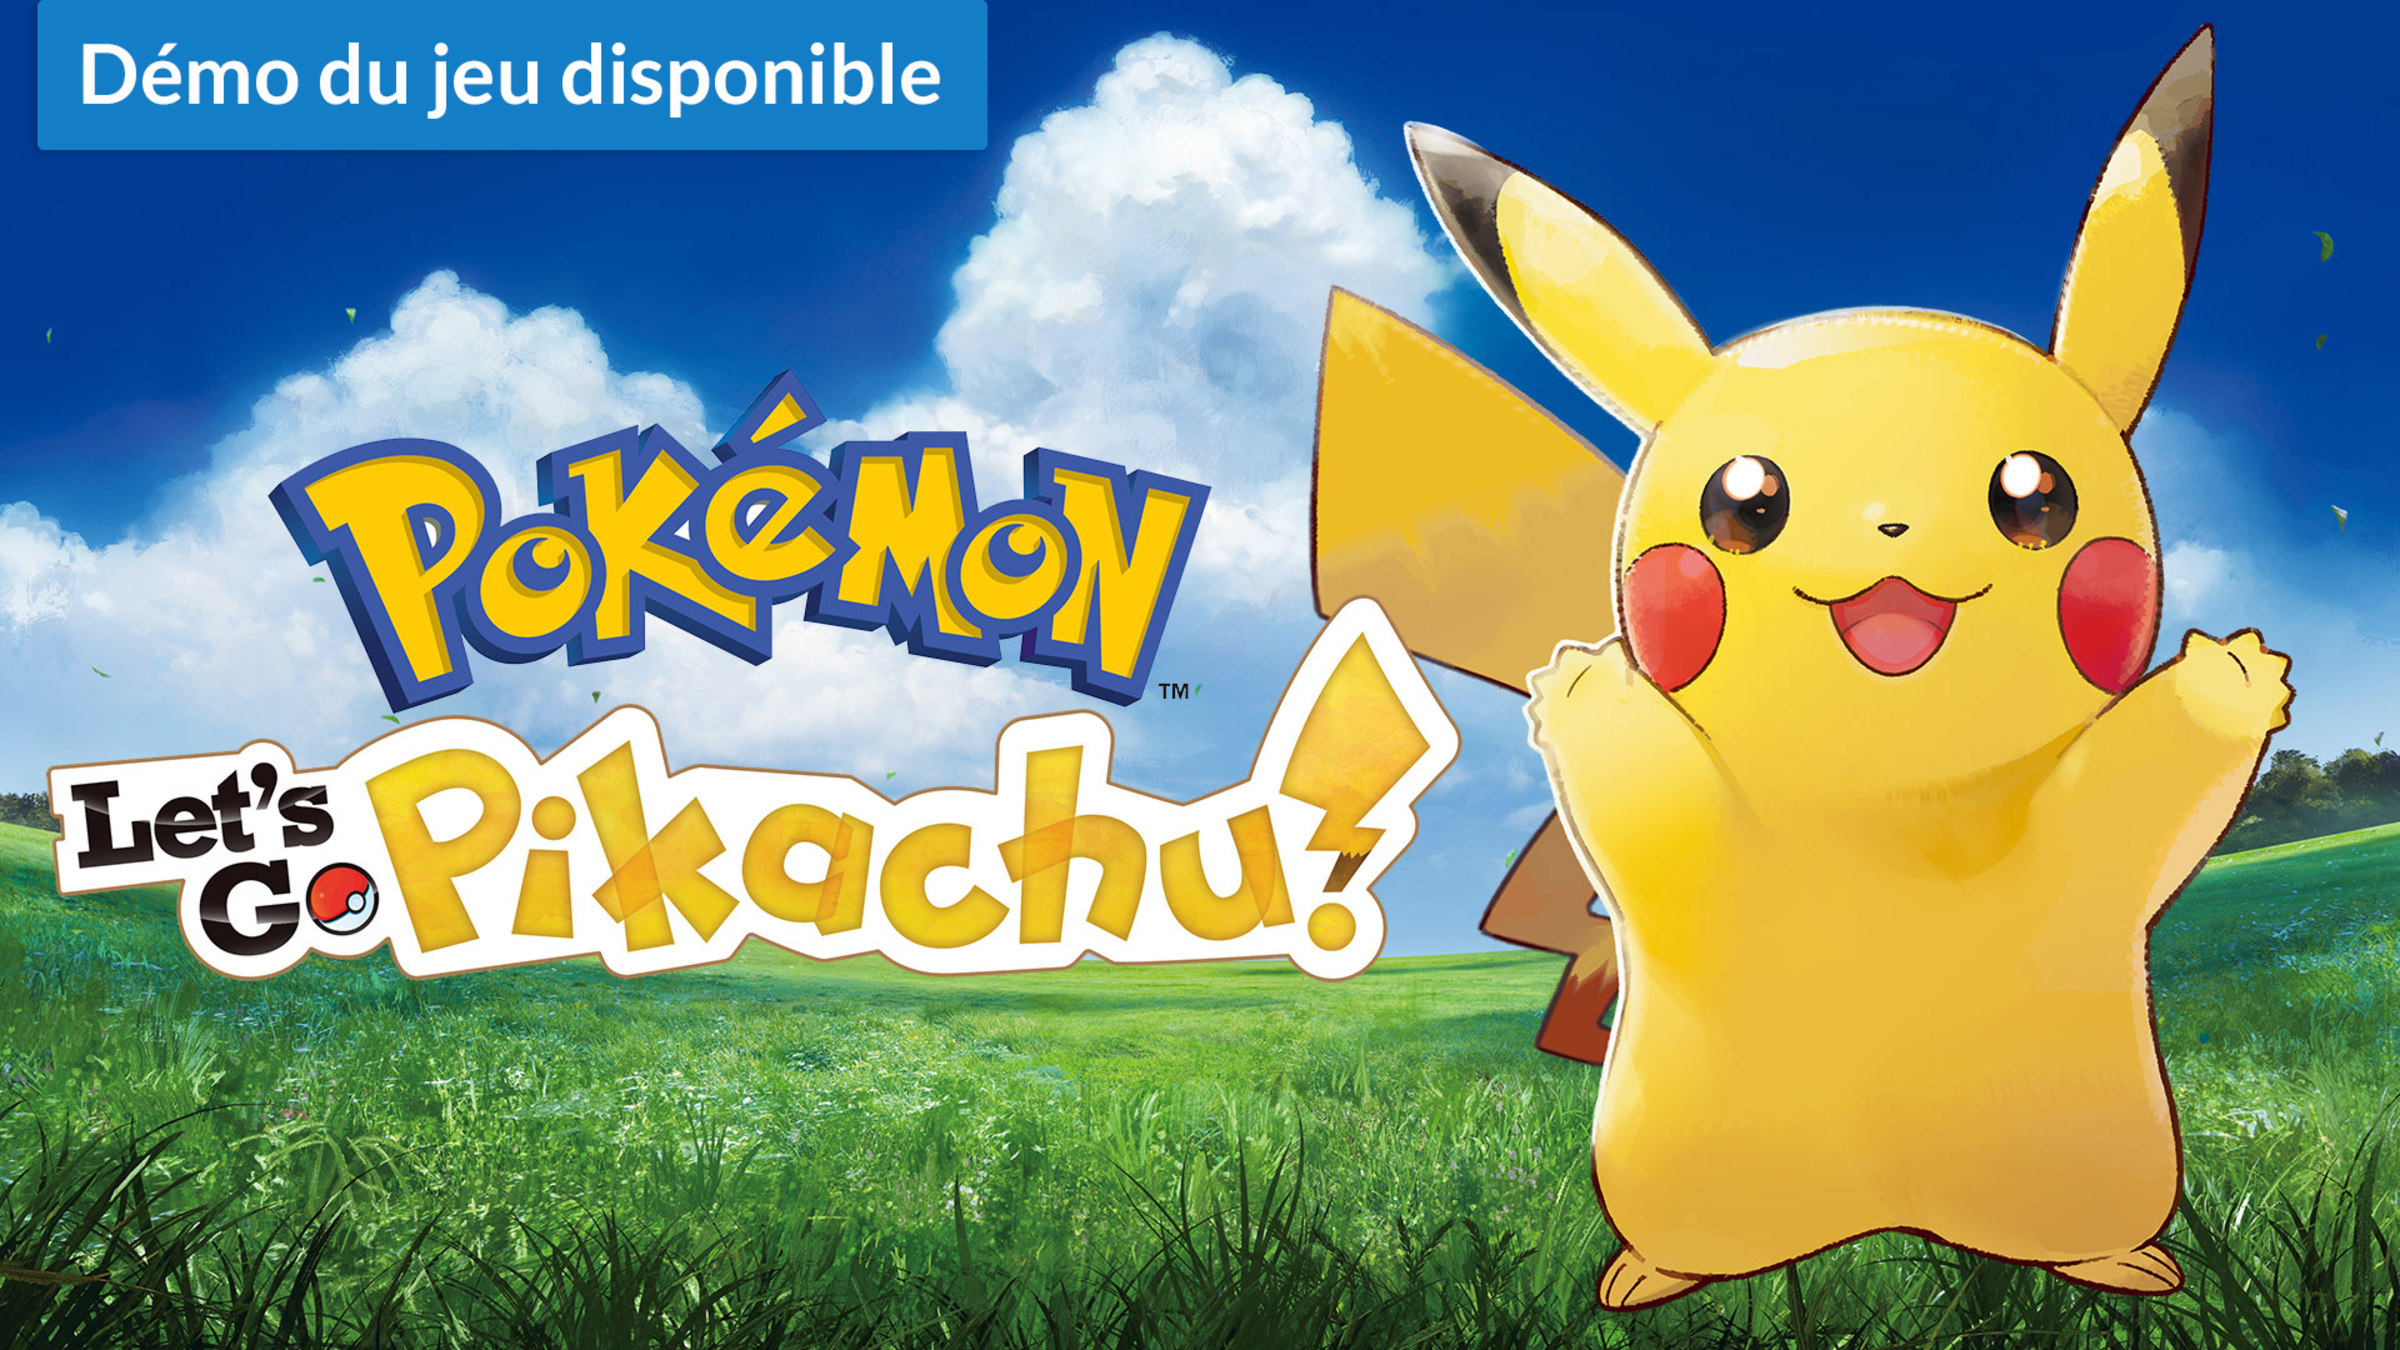 Pokémon Let's Go : Nintendo officialise son premier jeu Pokémon sur Switch  - CNET France